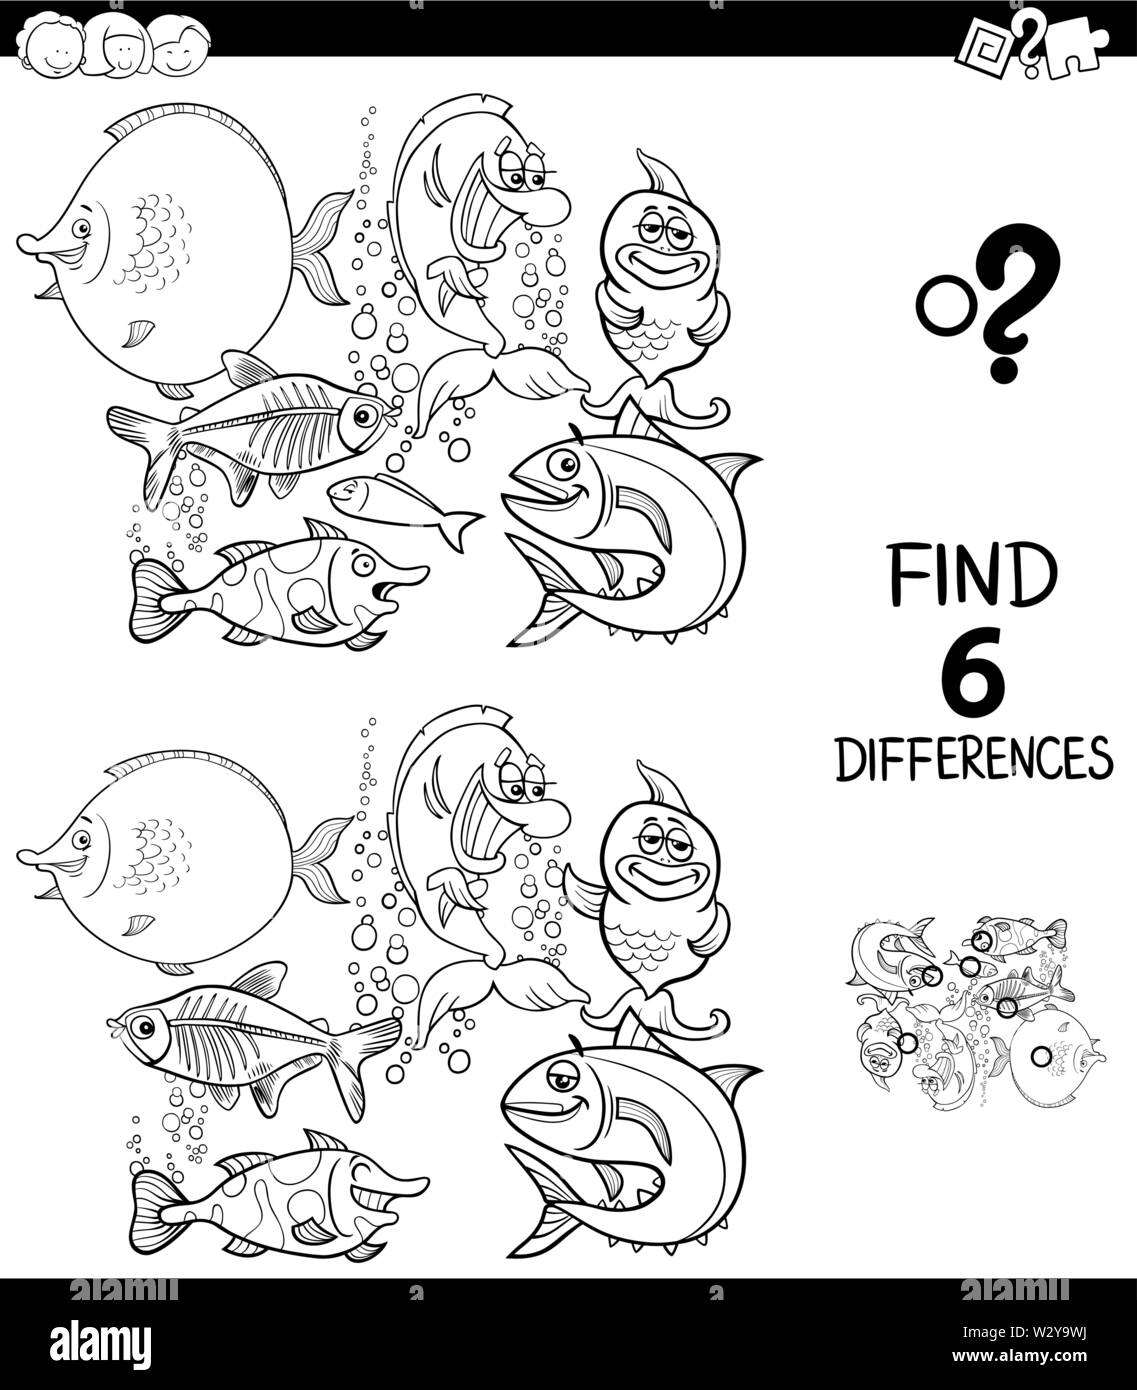 Illustration Cartoon noir et blanc de trouver six différences entre les photos, jeu éducatif pour enfants avec drôle de coloration du poisson dans l'eau B Illustration de Vecteur